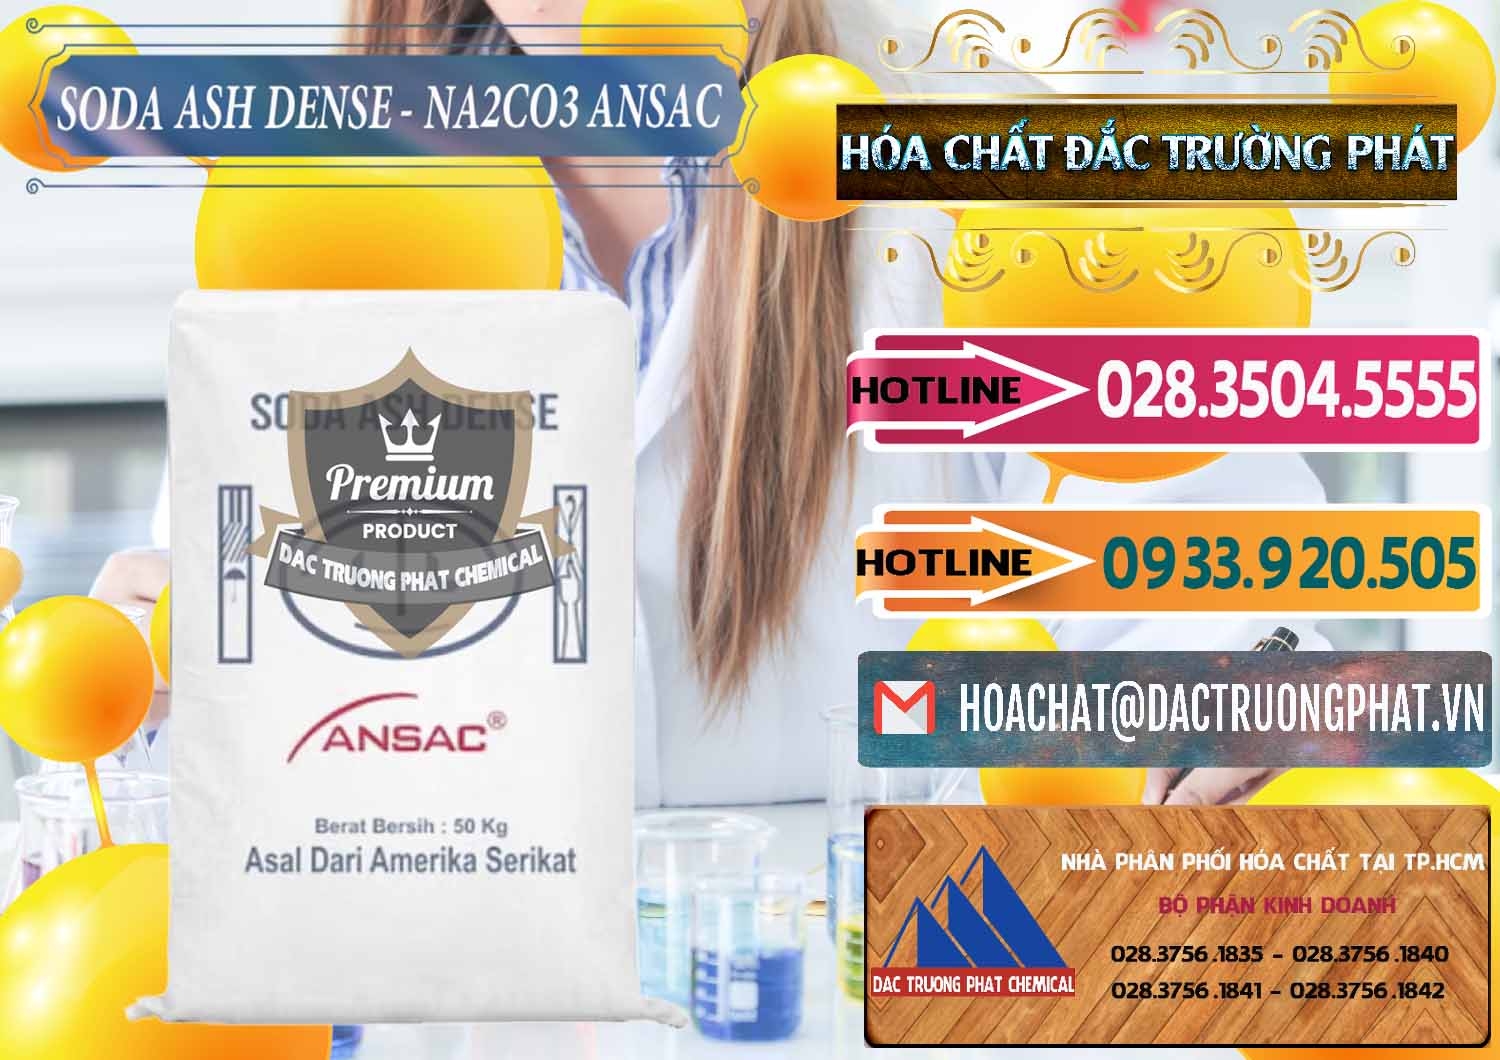 Cty chuyên phân phối - bán Soda Ash Dense - NA2CO3 Ansac Mỹ USA - 0412 - Cty chuyên kinh doanh & cung cấp hóa chất tại TP.HCM - dactruongphat.vn